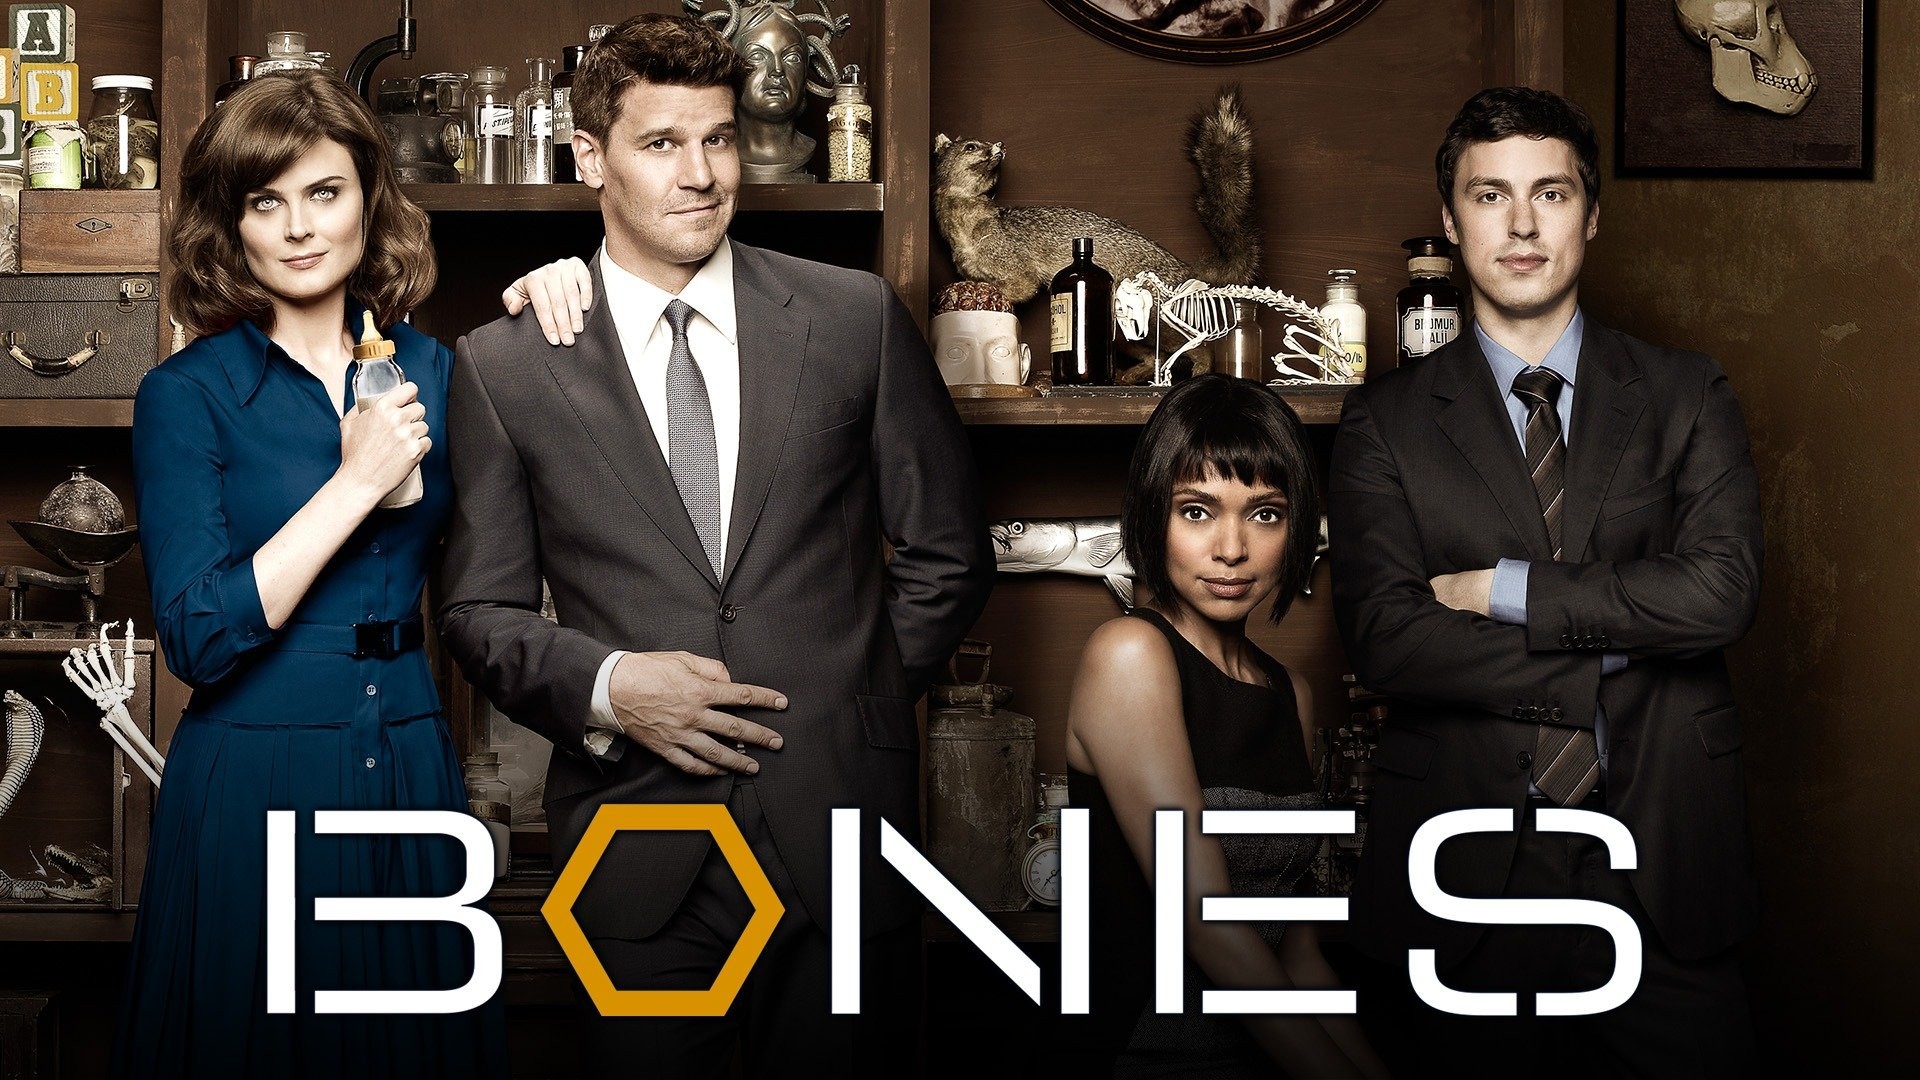  Bones - Season 7 [Blu-ray] (Region Free) : Movies & TV